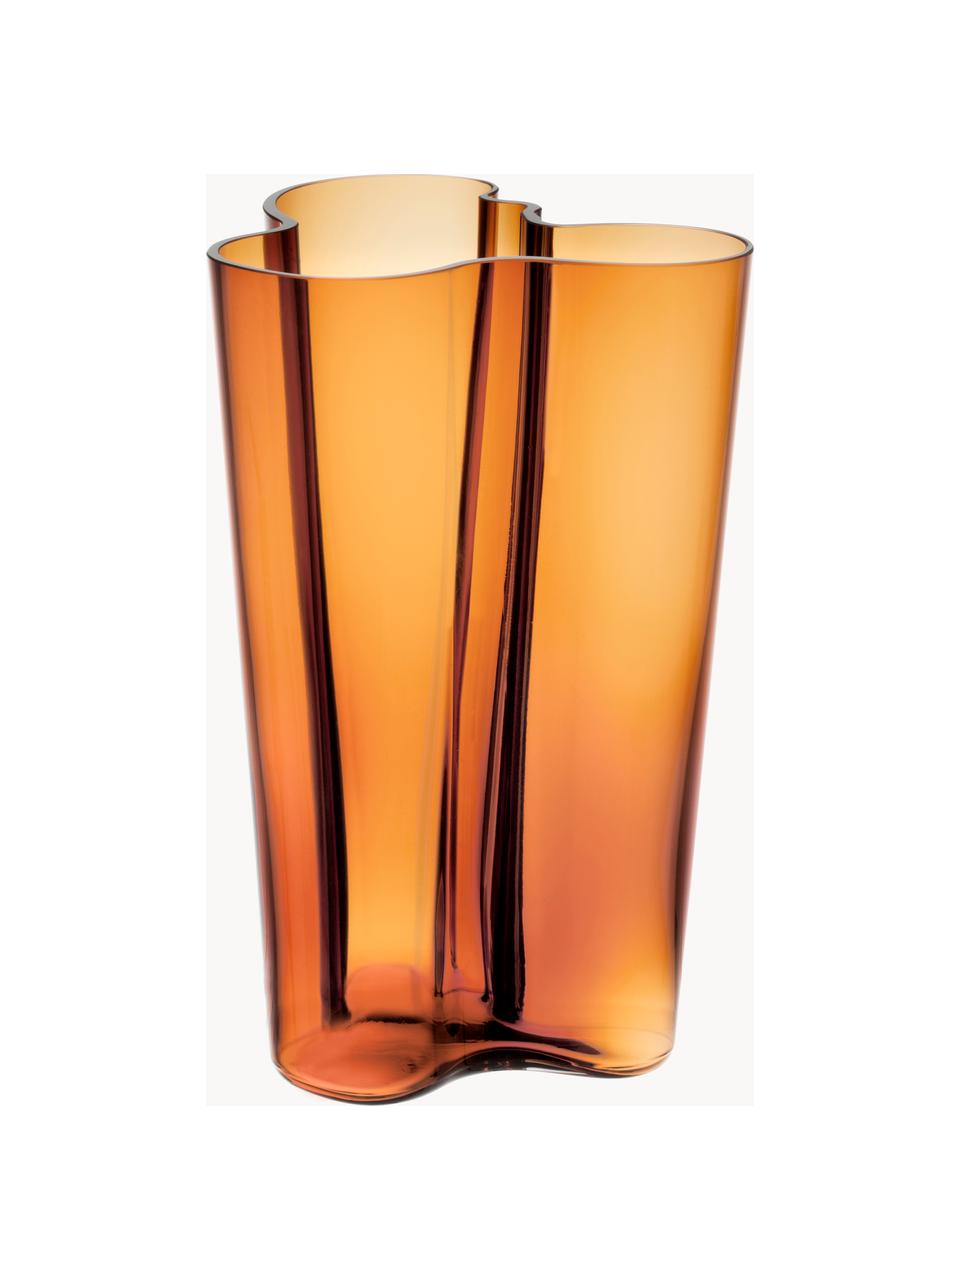 Mondgeblazen vaas Alvar Aalto, H 25 cm, Mondgeblazen glas, Oranje, transparant, B 17 x H 25 cm